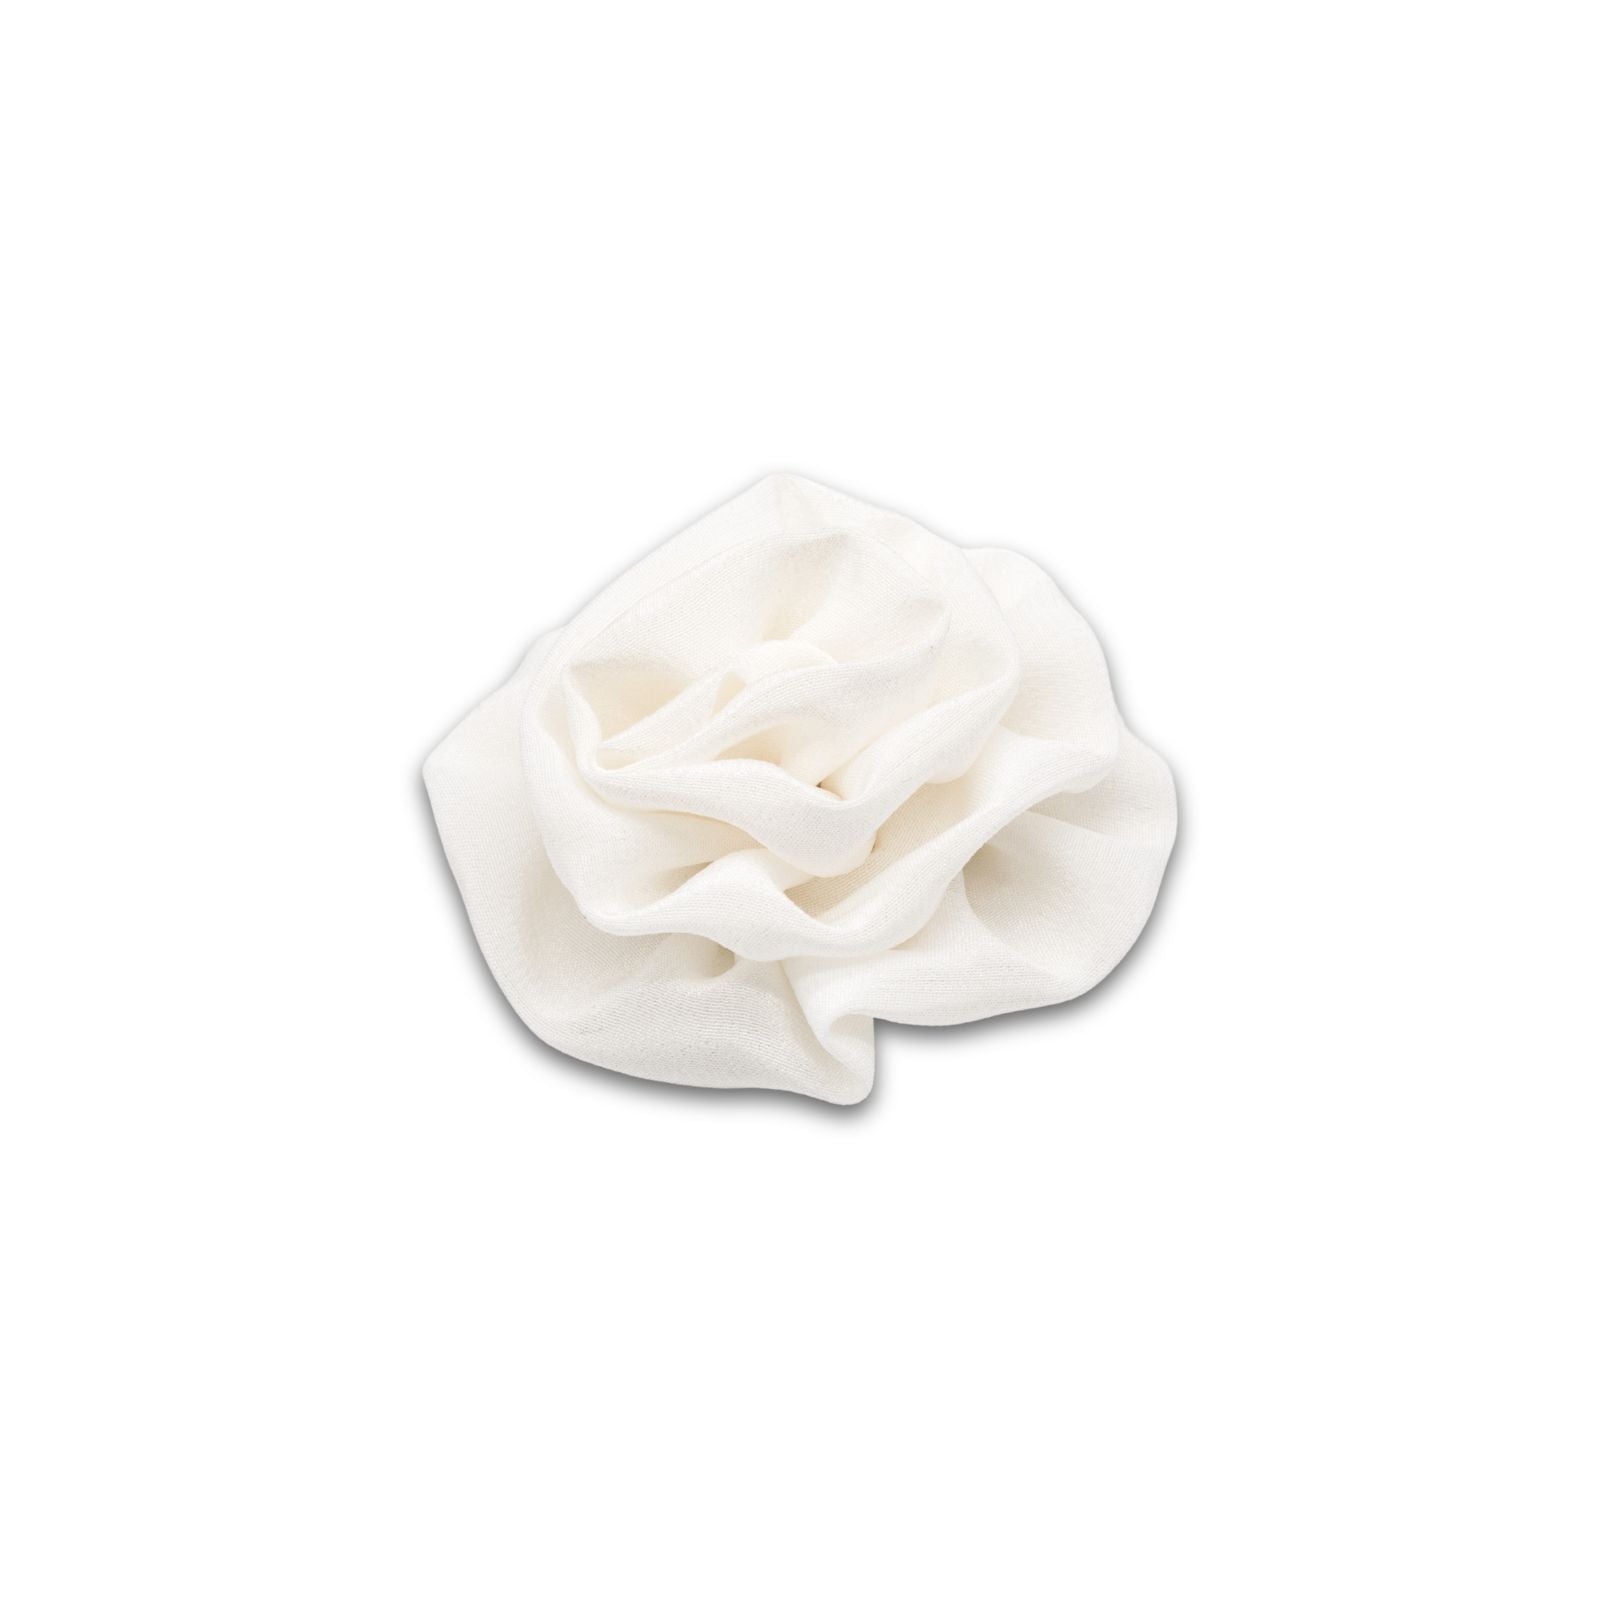 MyBoutonniere | Classic White Silk Crepe de Chine Small